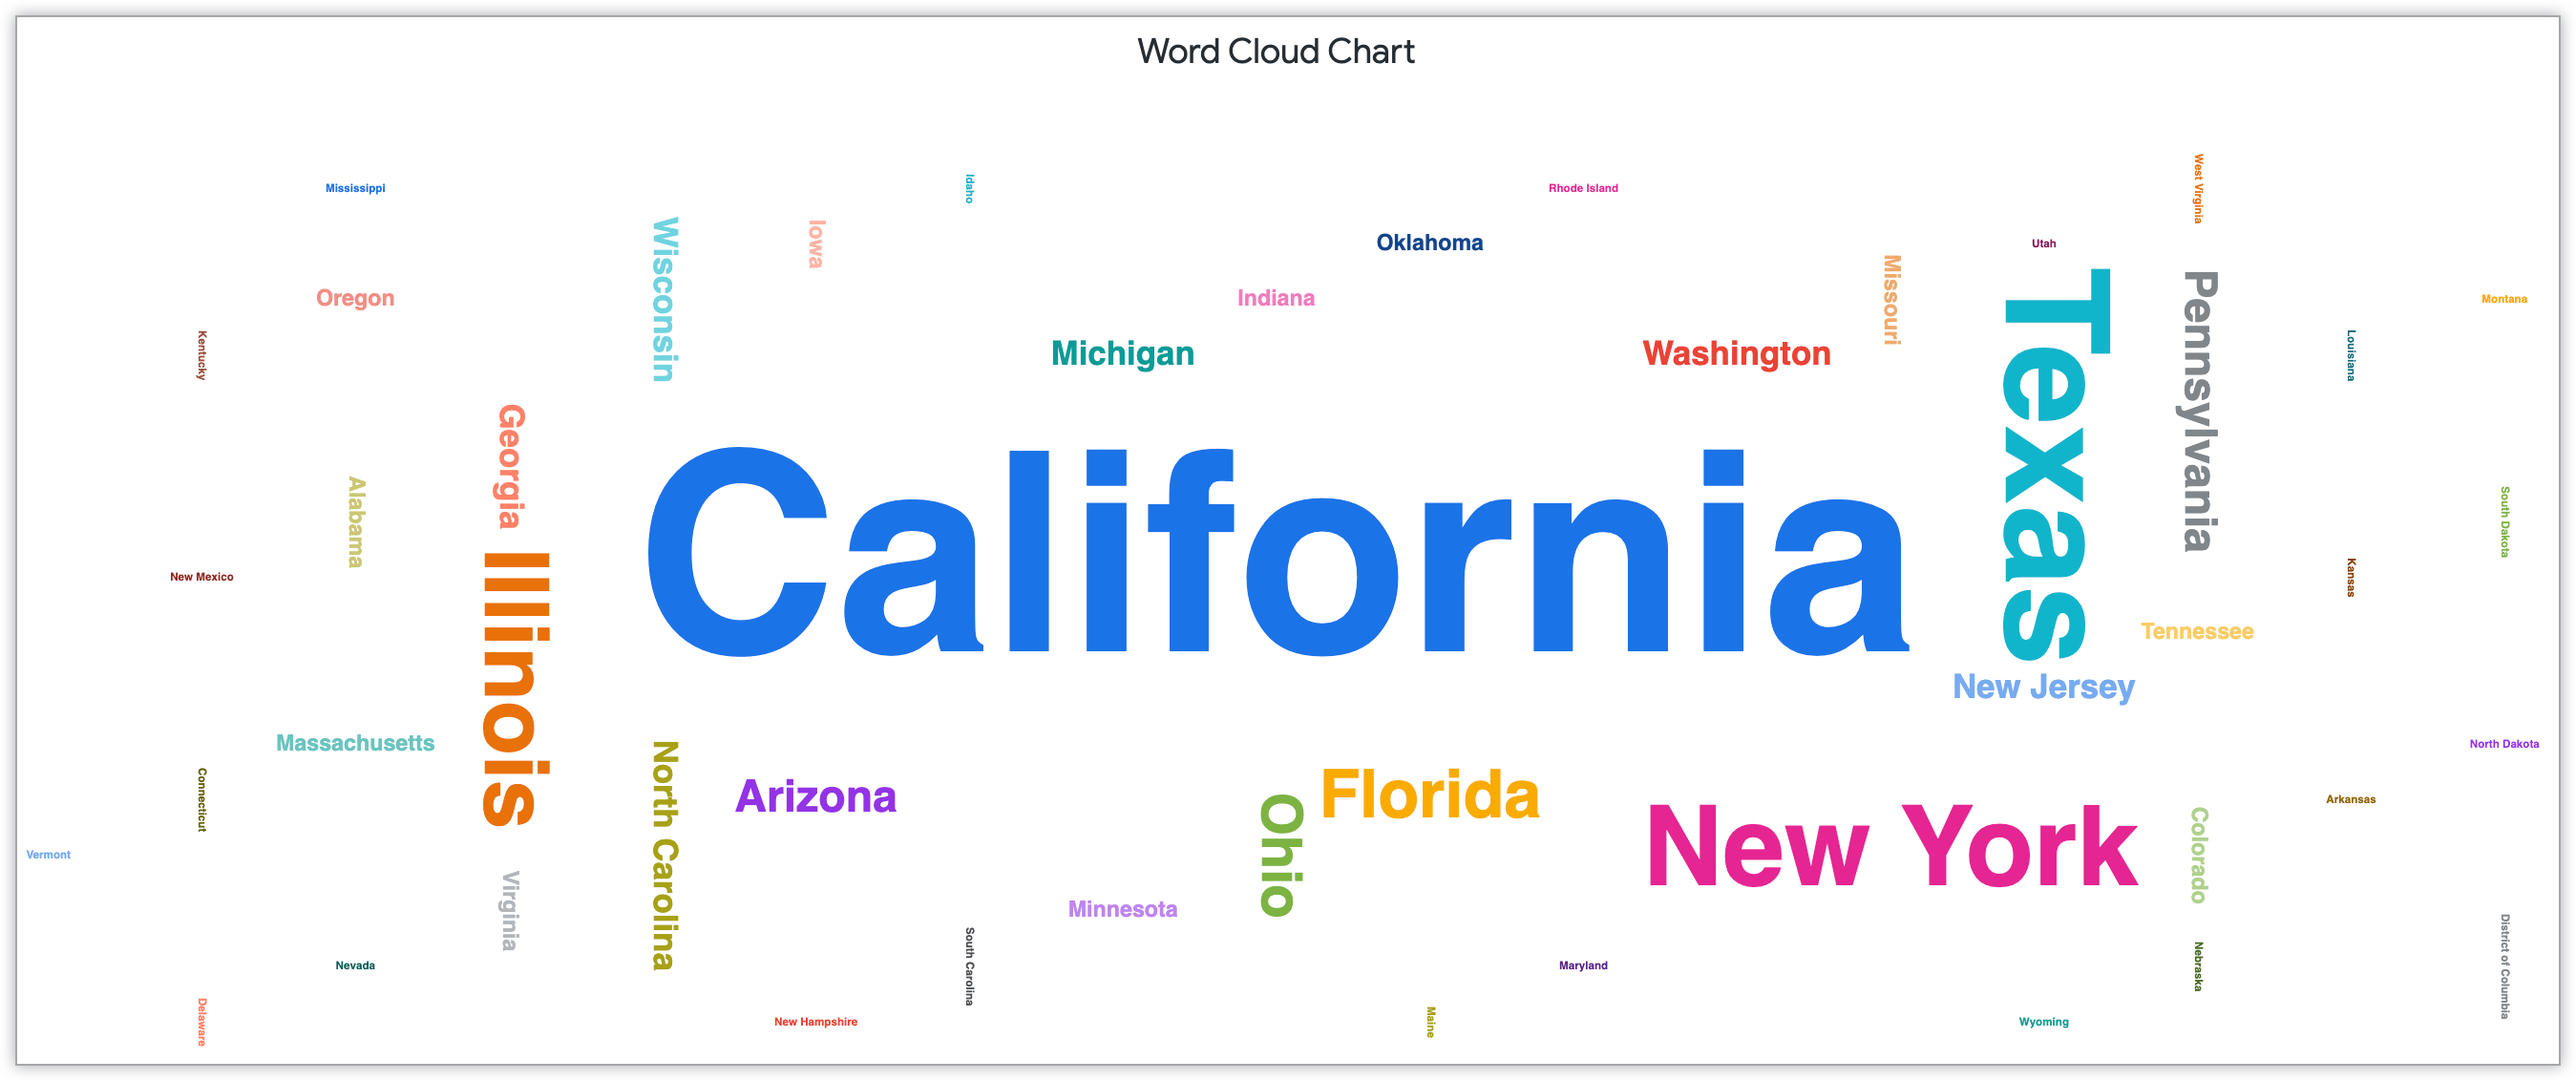 Diagram cloud kata yang menampilkan nama negara bagian menurut jumlah pelanggan di negara bagian tersebut.